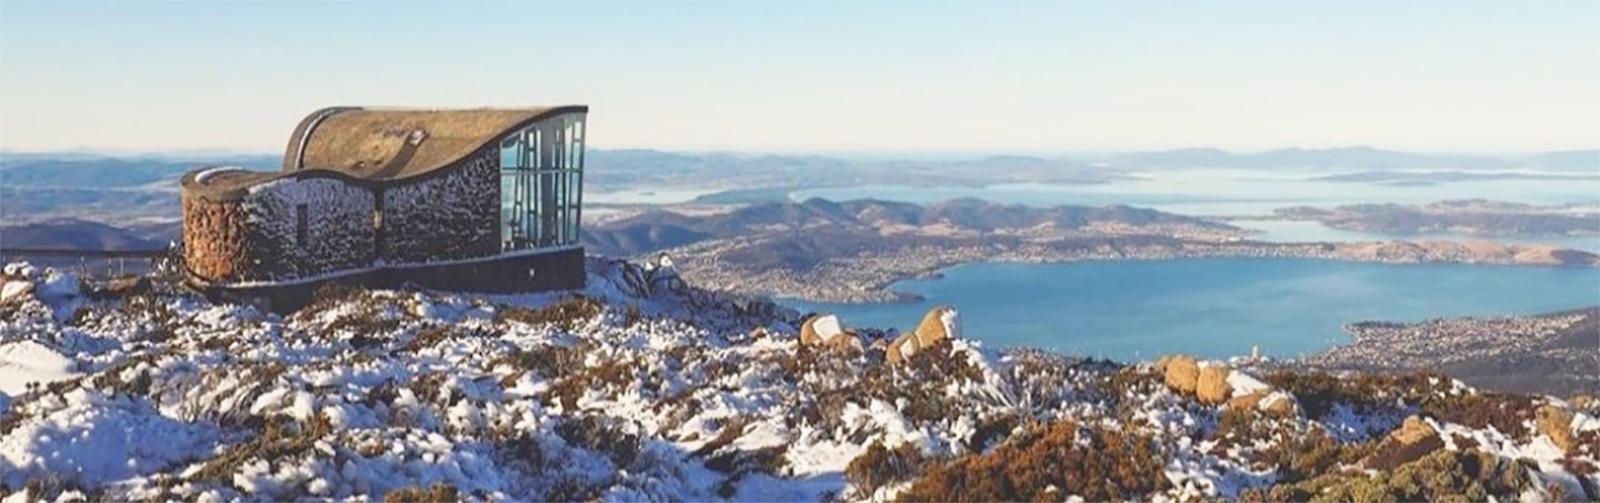 Winter in Hobart Mt Wellington